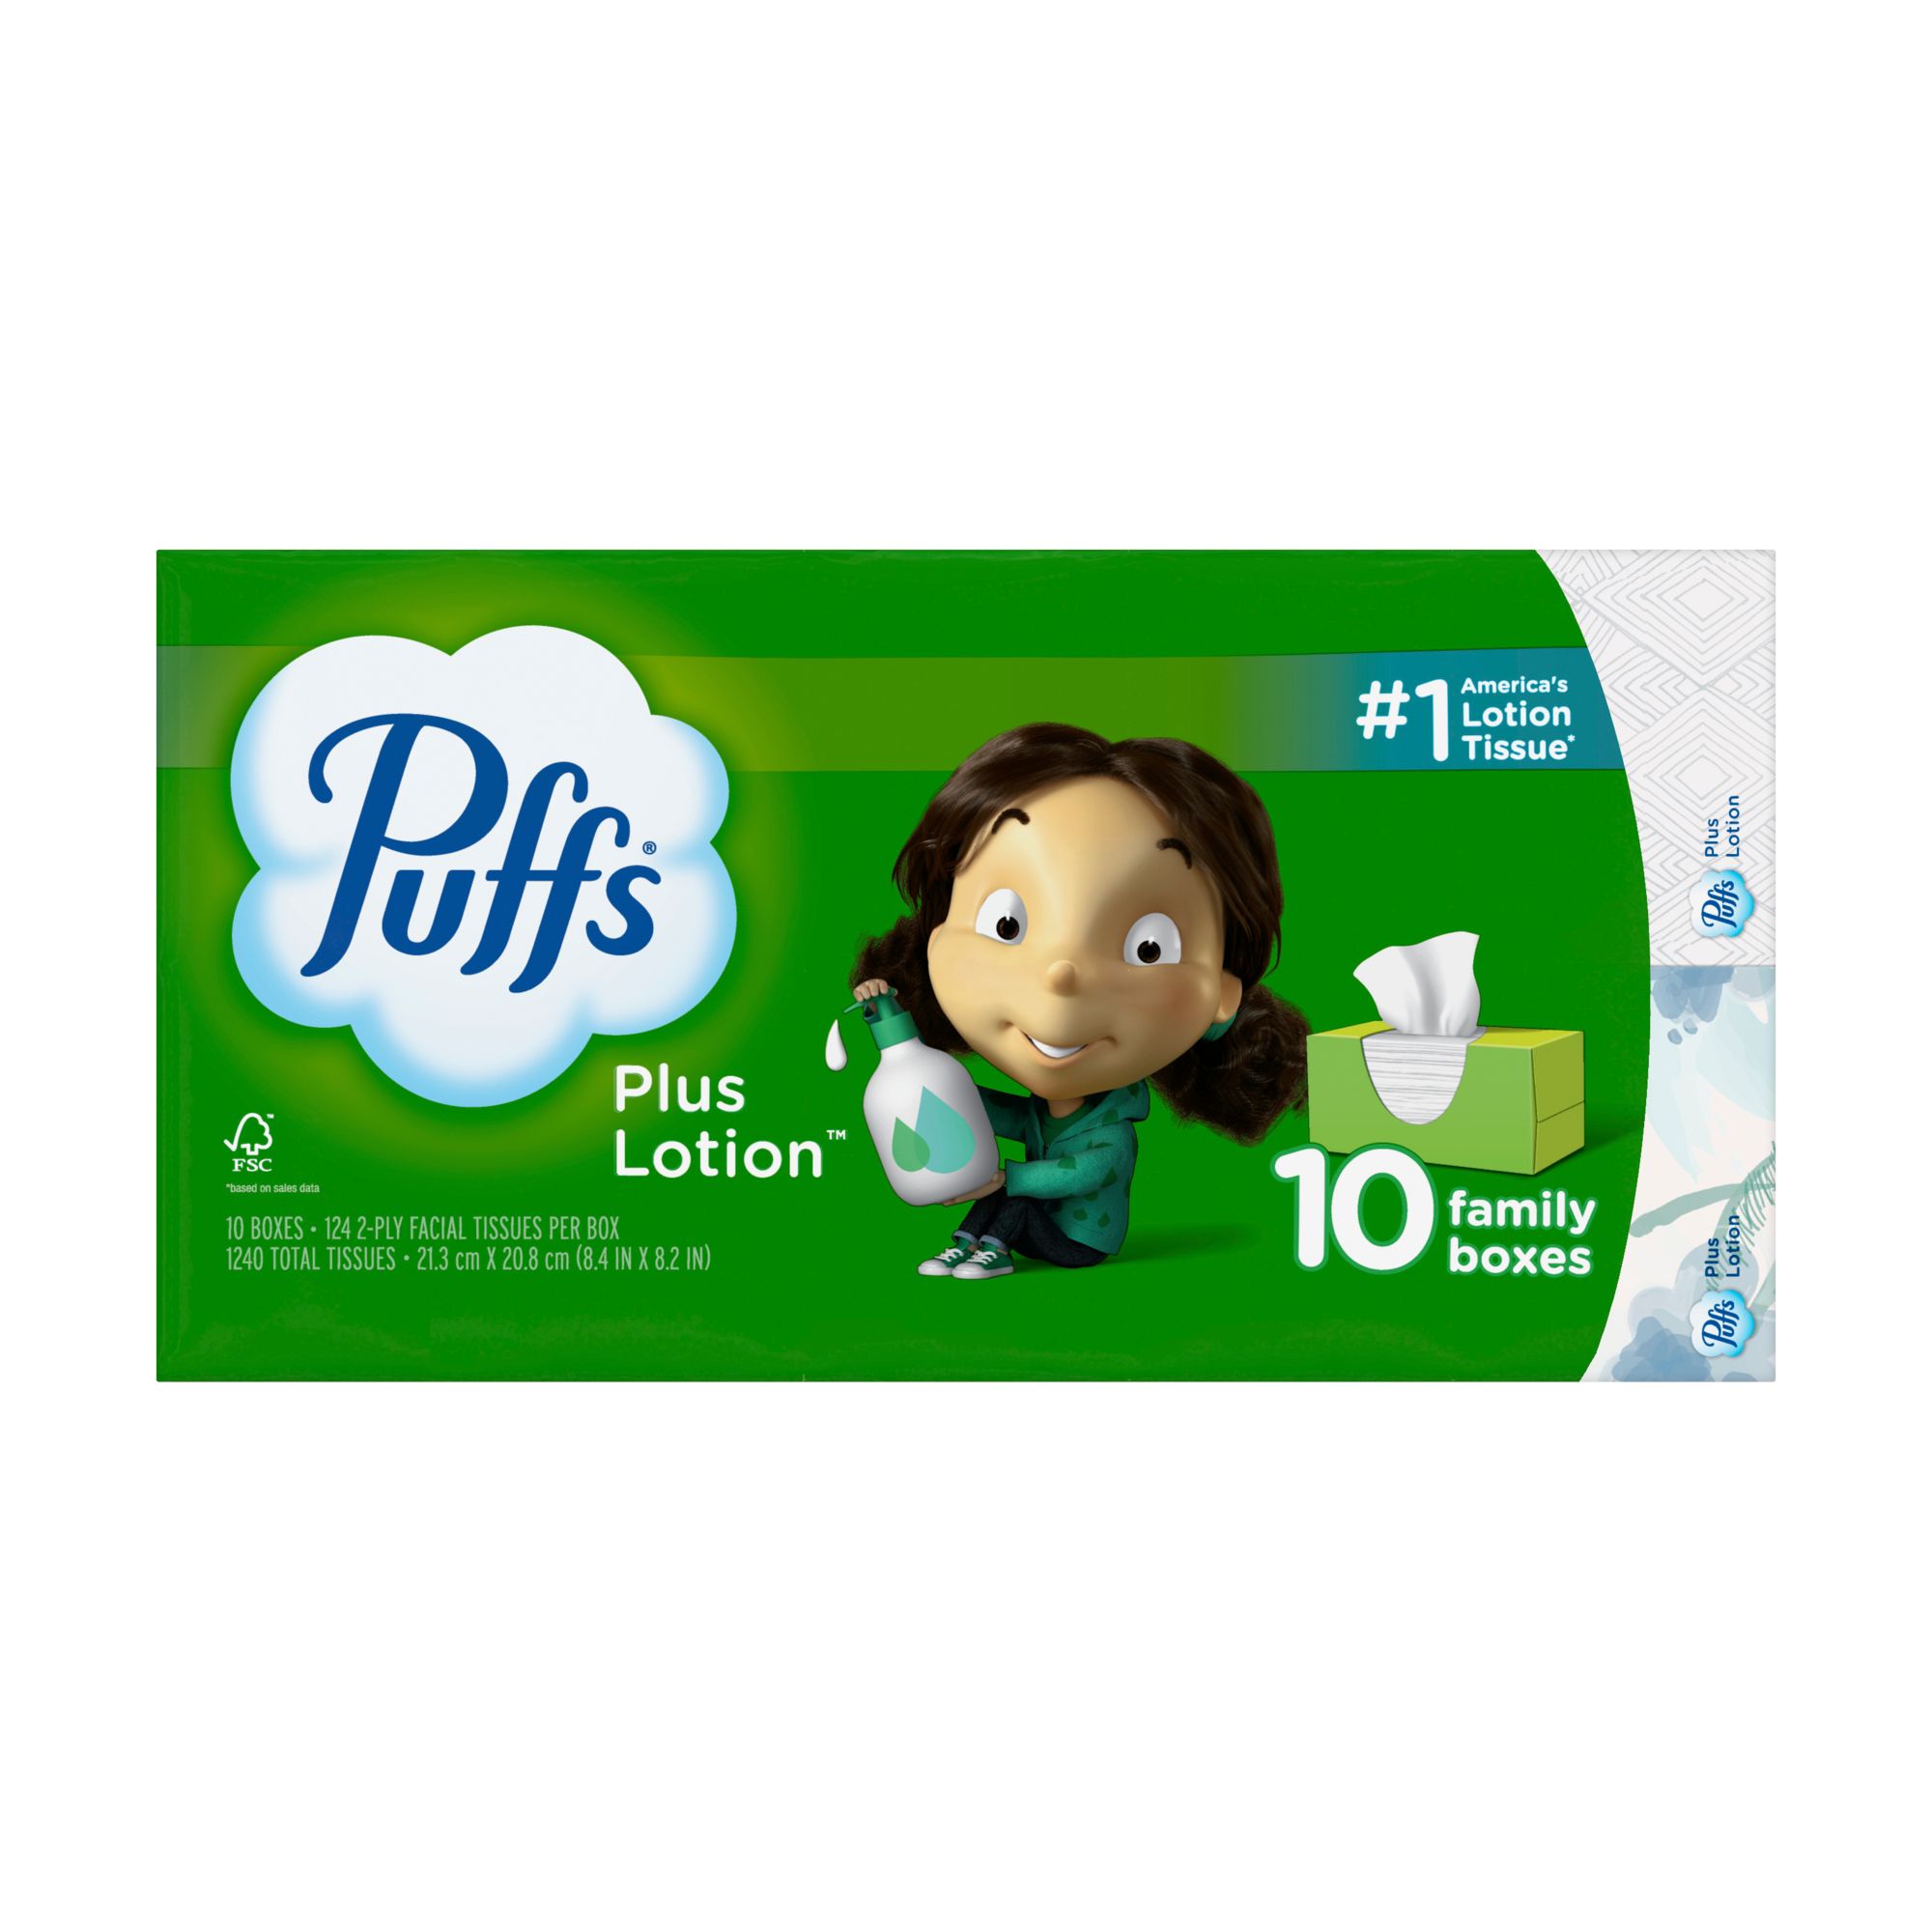 Puffs Plus Lotion Facial Tissues 3 Pk., Facial Tissue